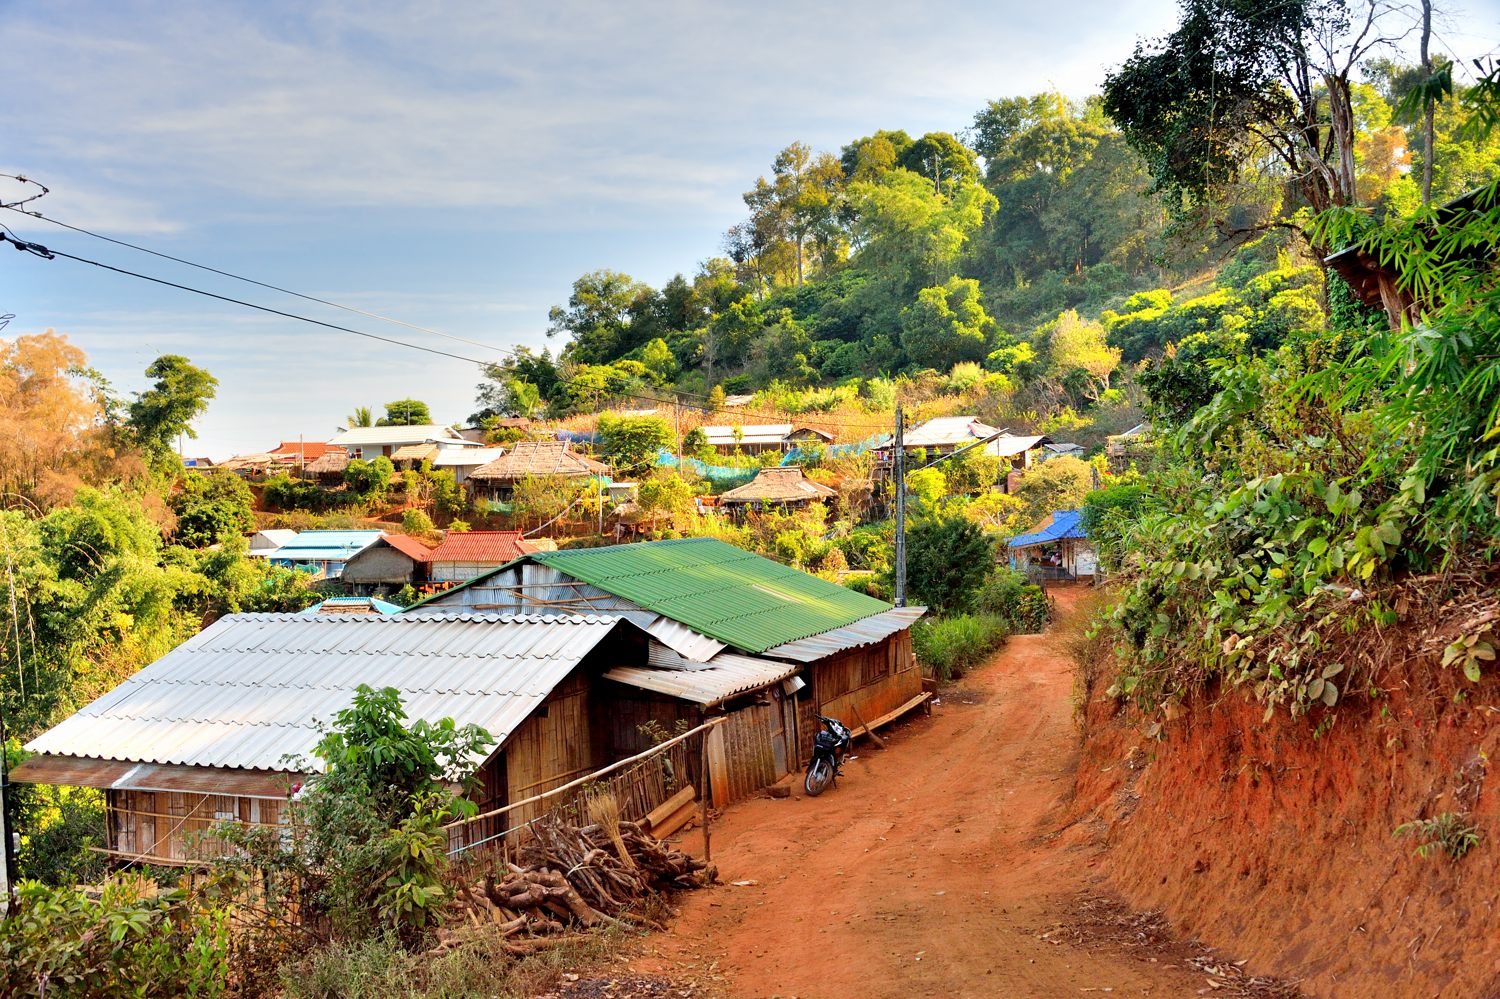 Rural village, Mae Salong, Thailand